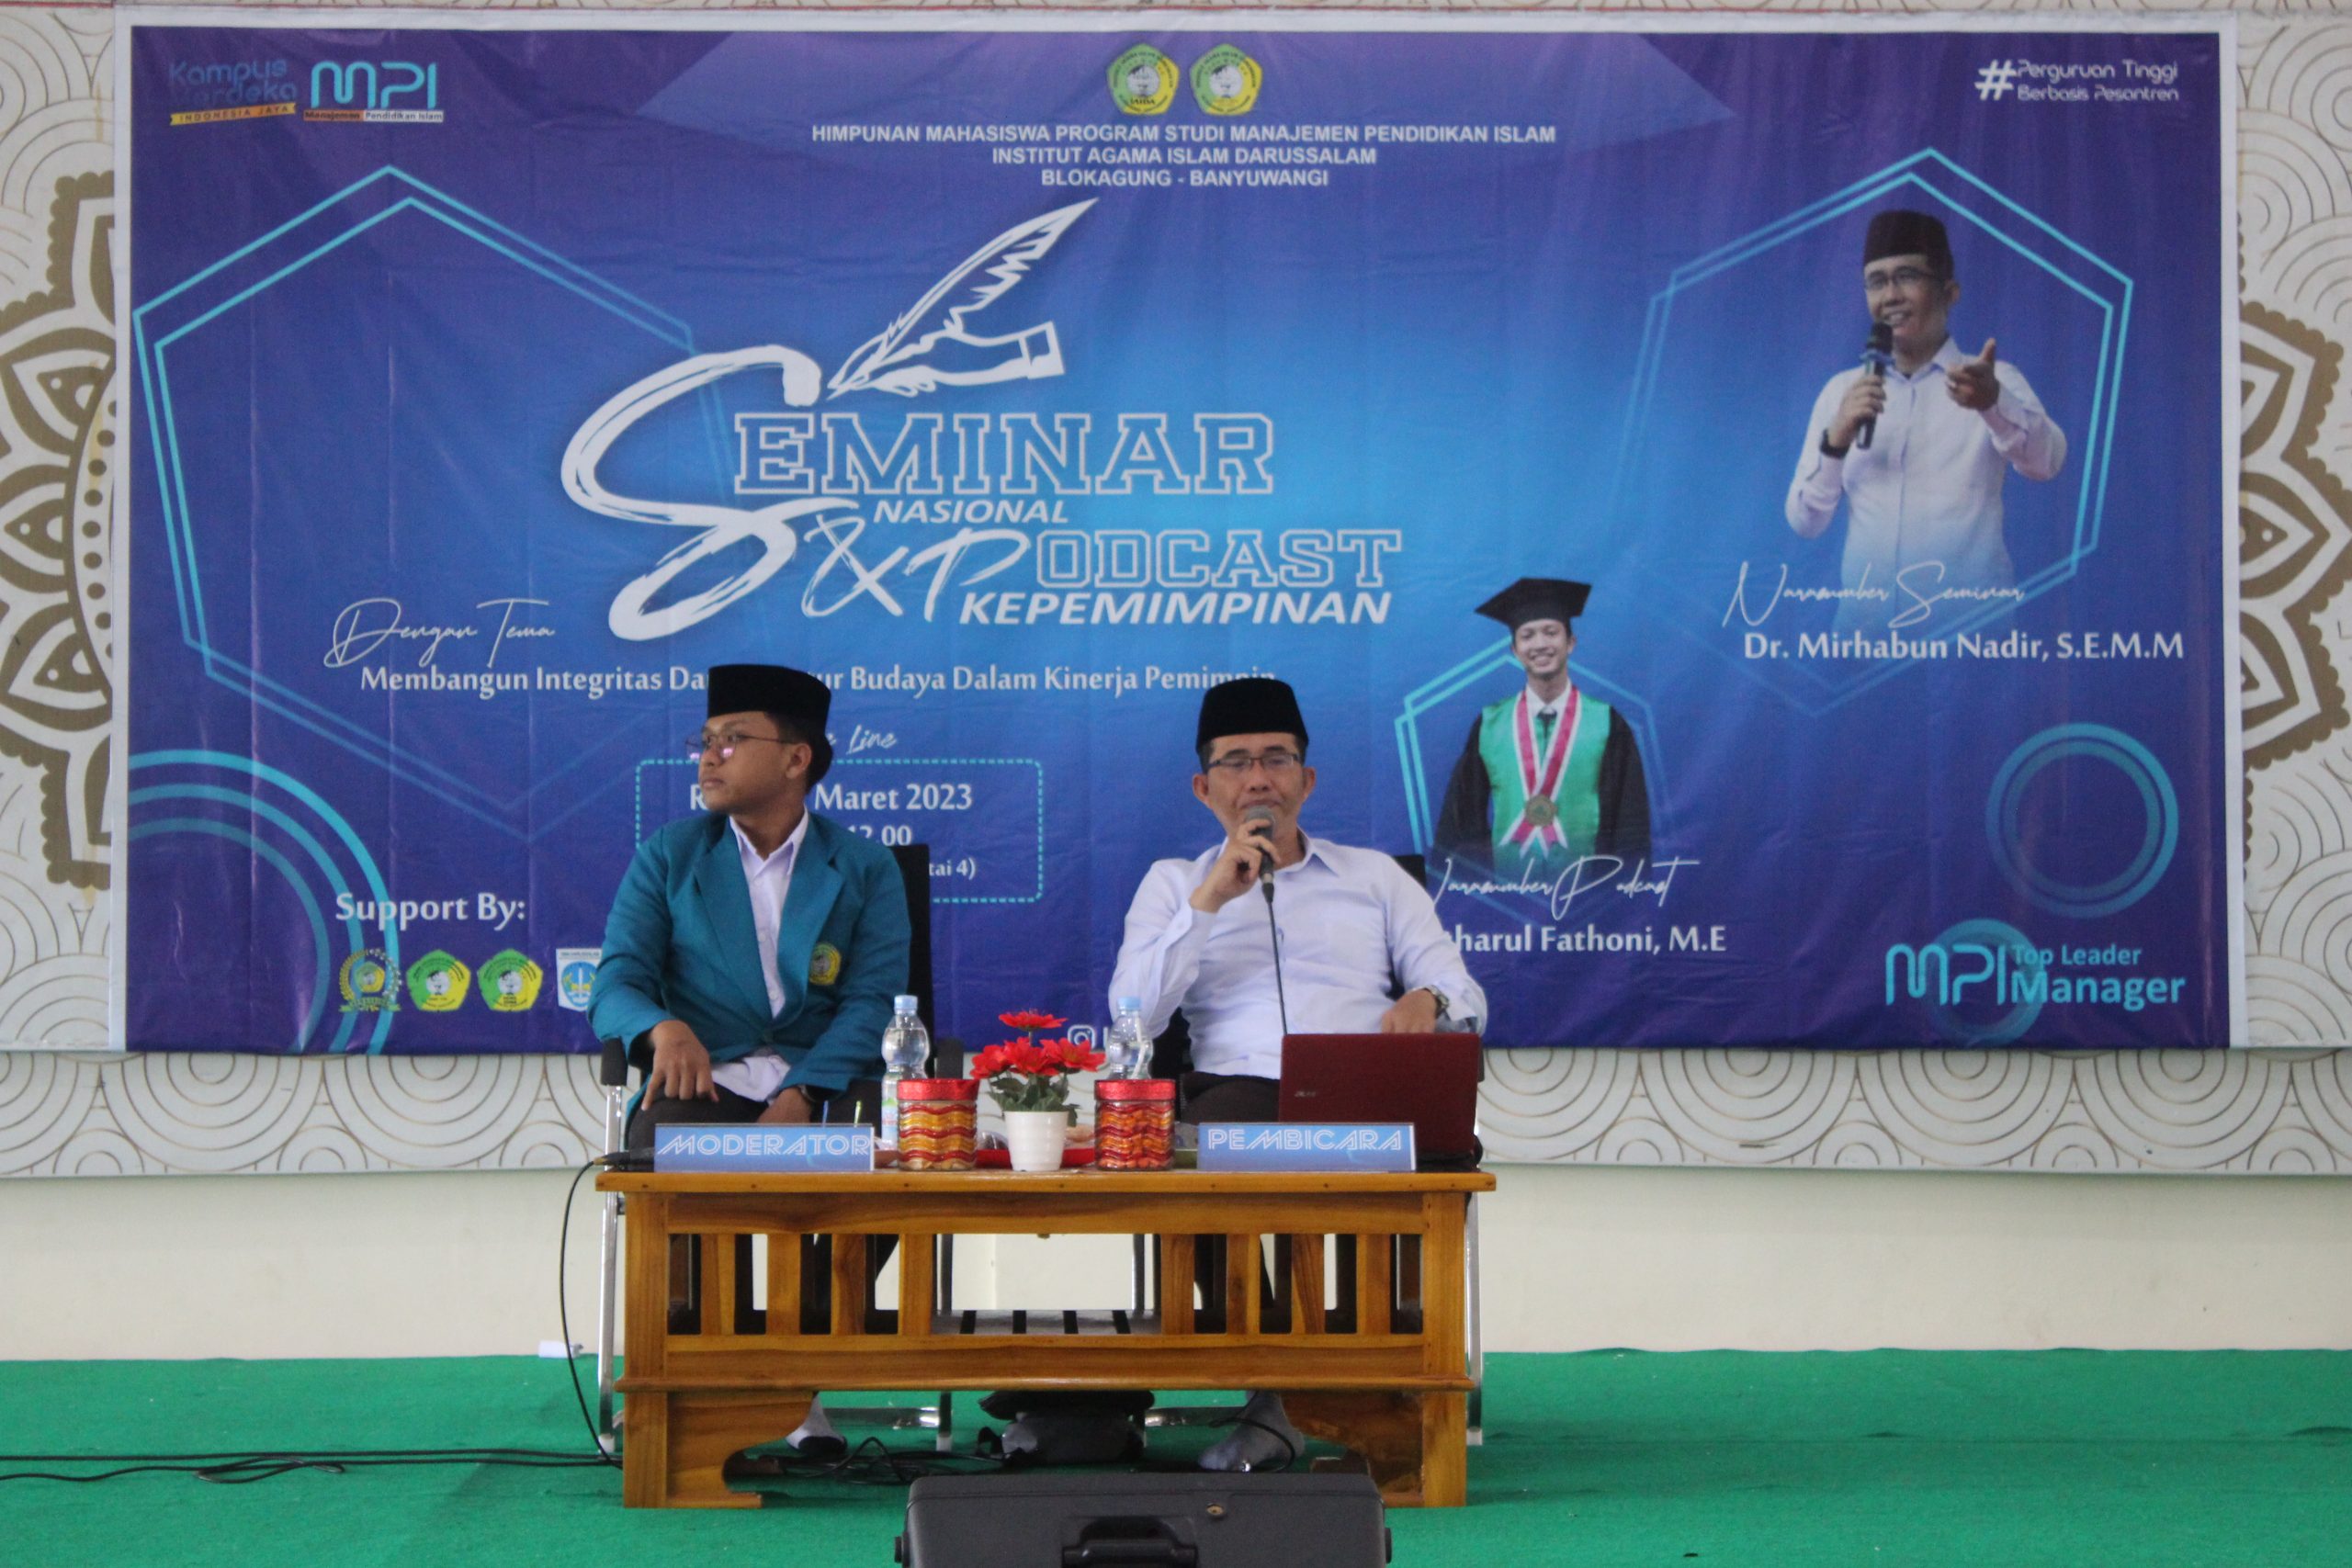 Seminar Nasional dan Podcast Kepemimpinan Oleh Dr. Mirhabun Nadir, S.E., M.M.